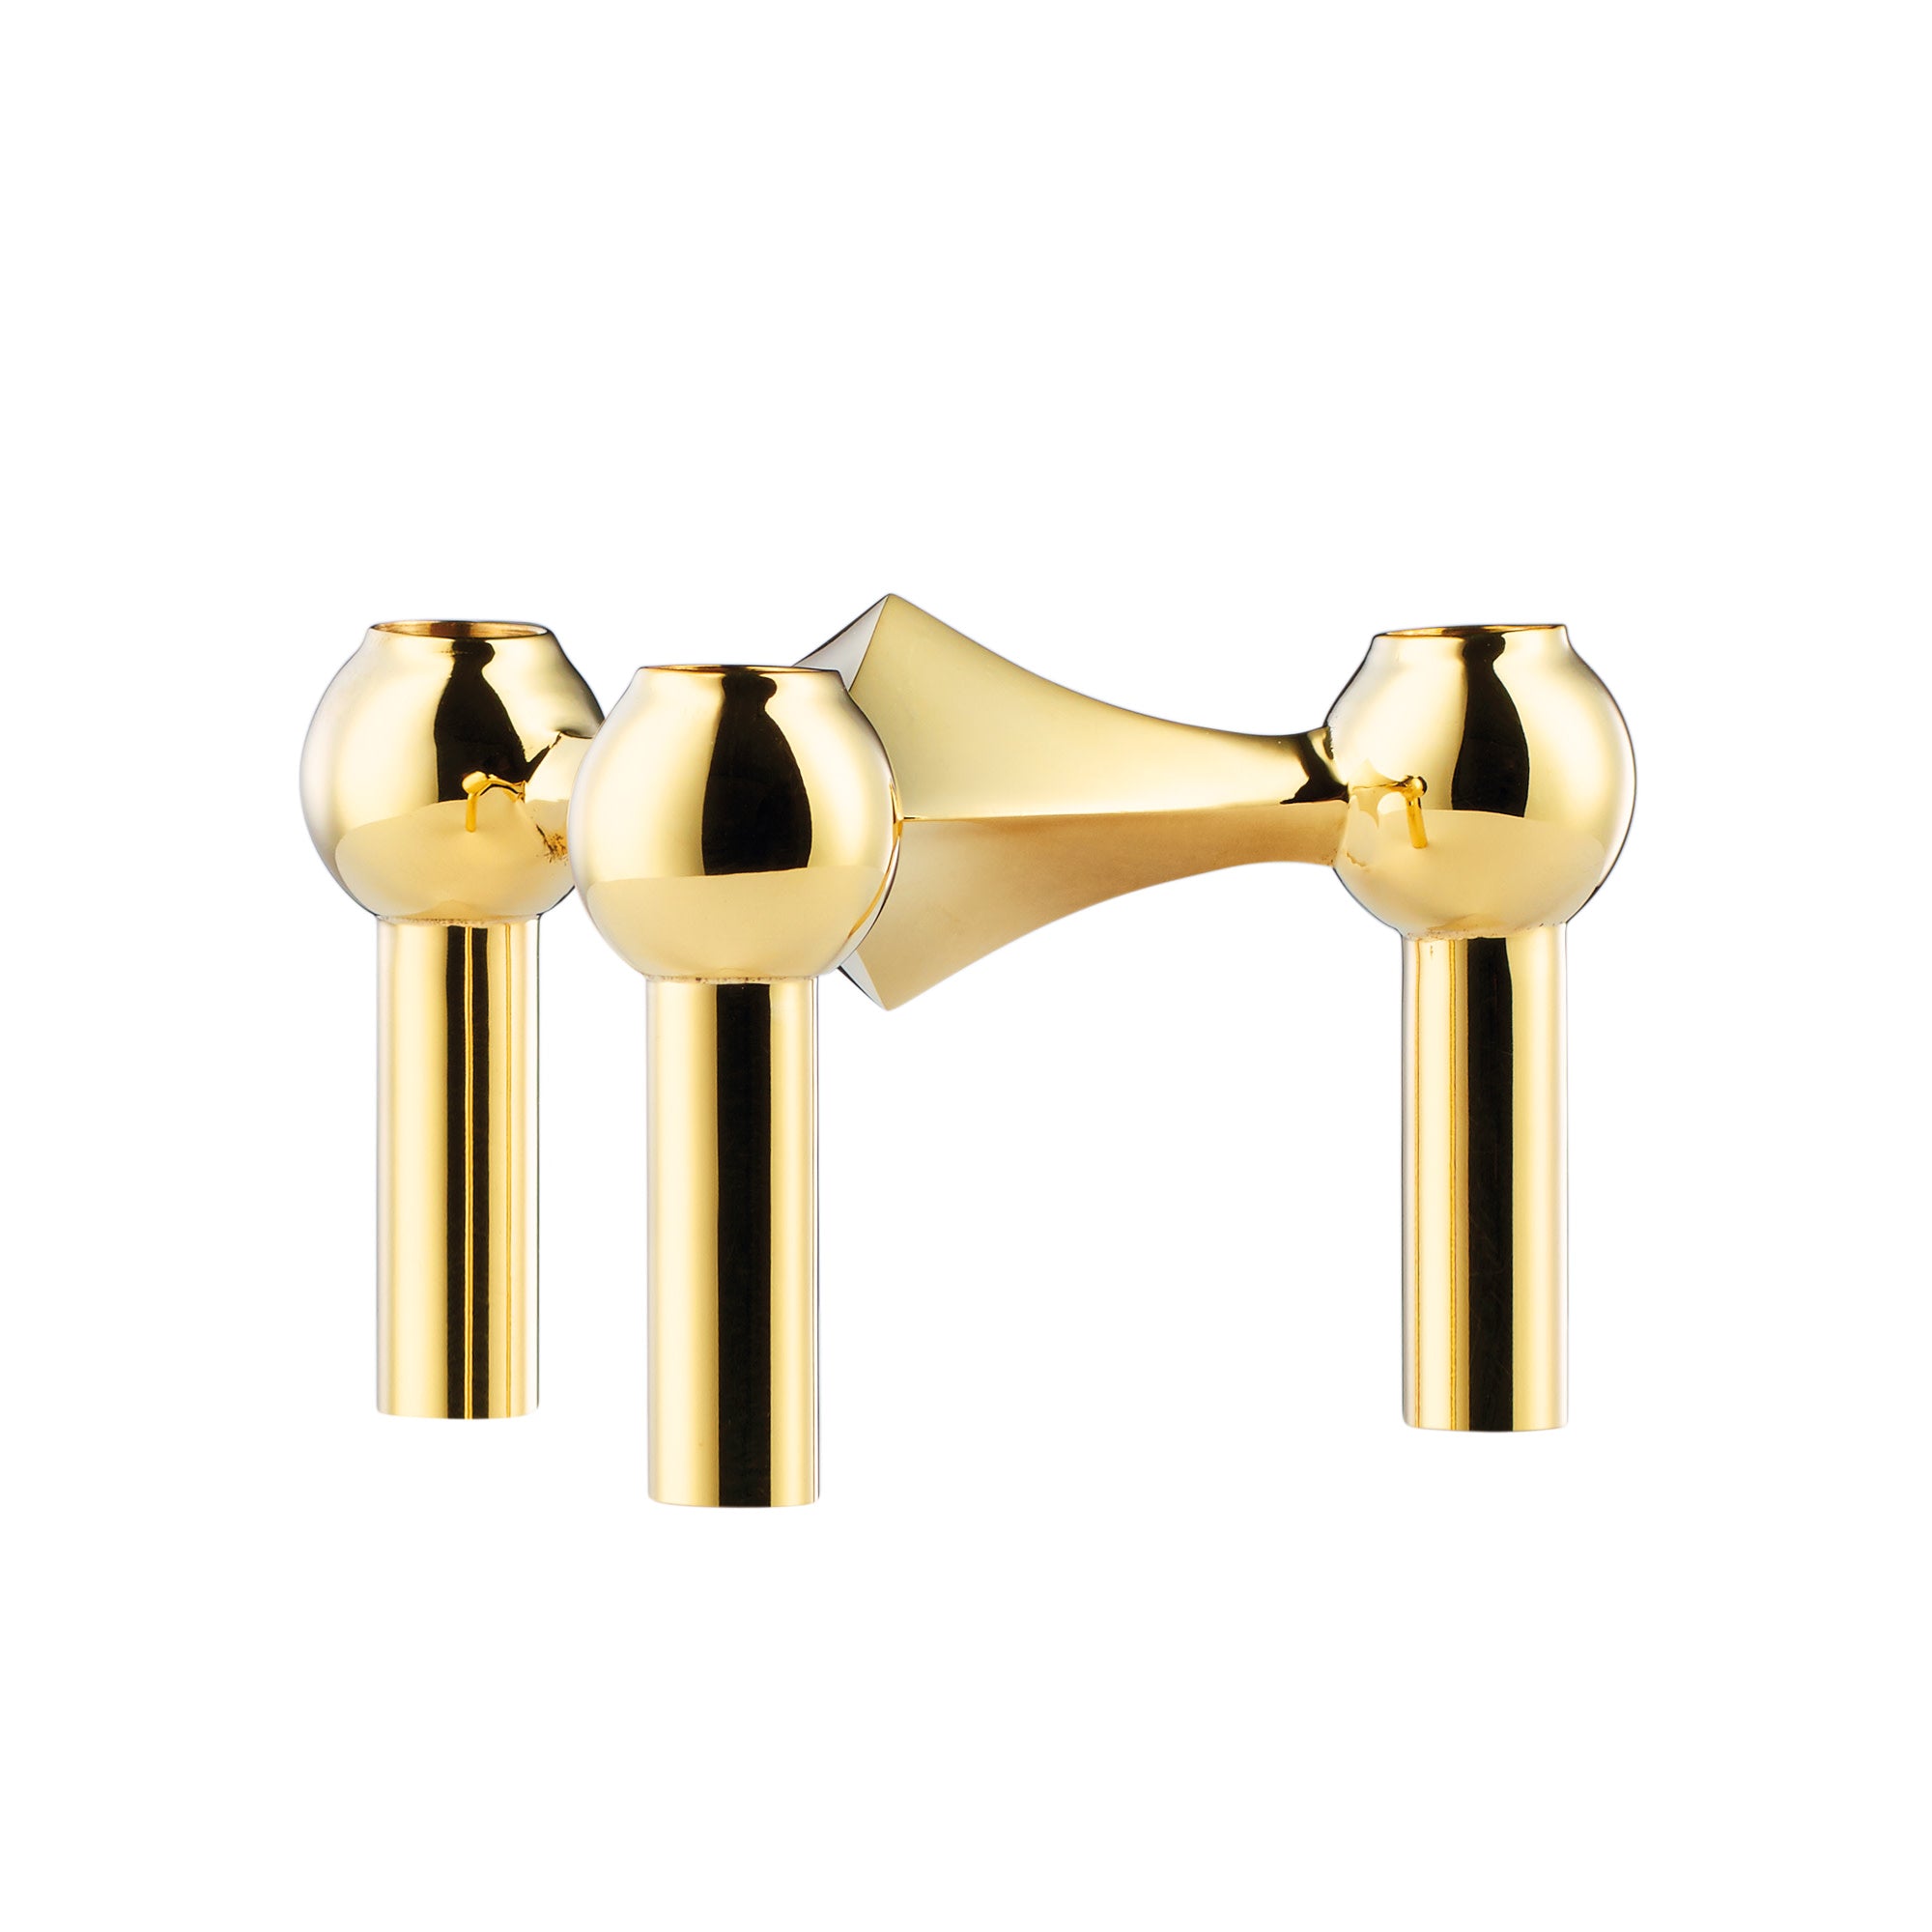 Stoff Nagel gold brass candle holder